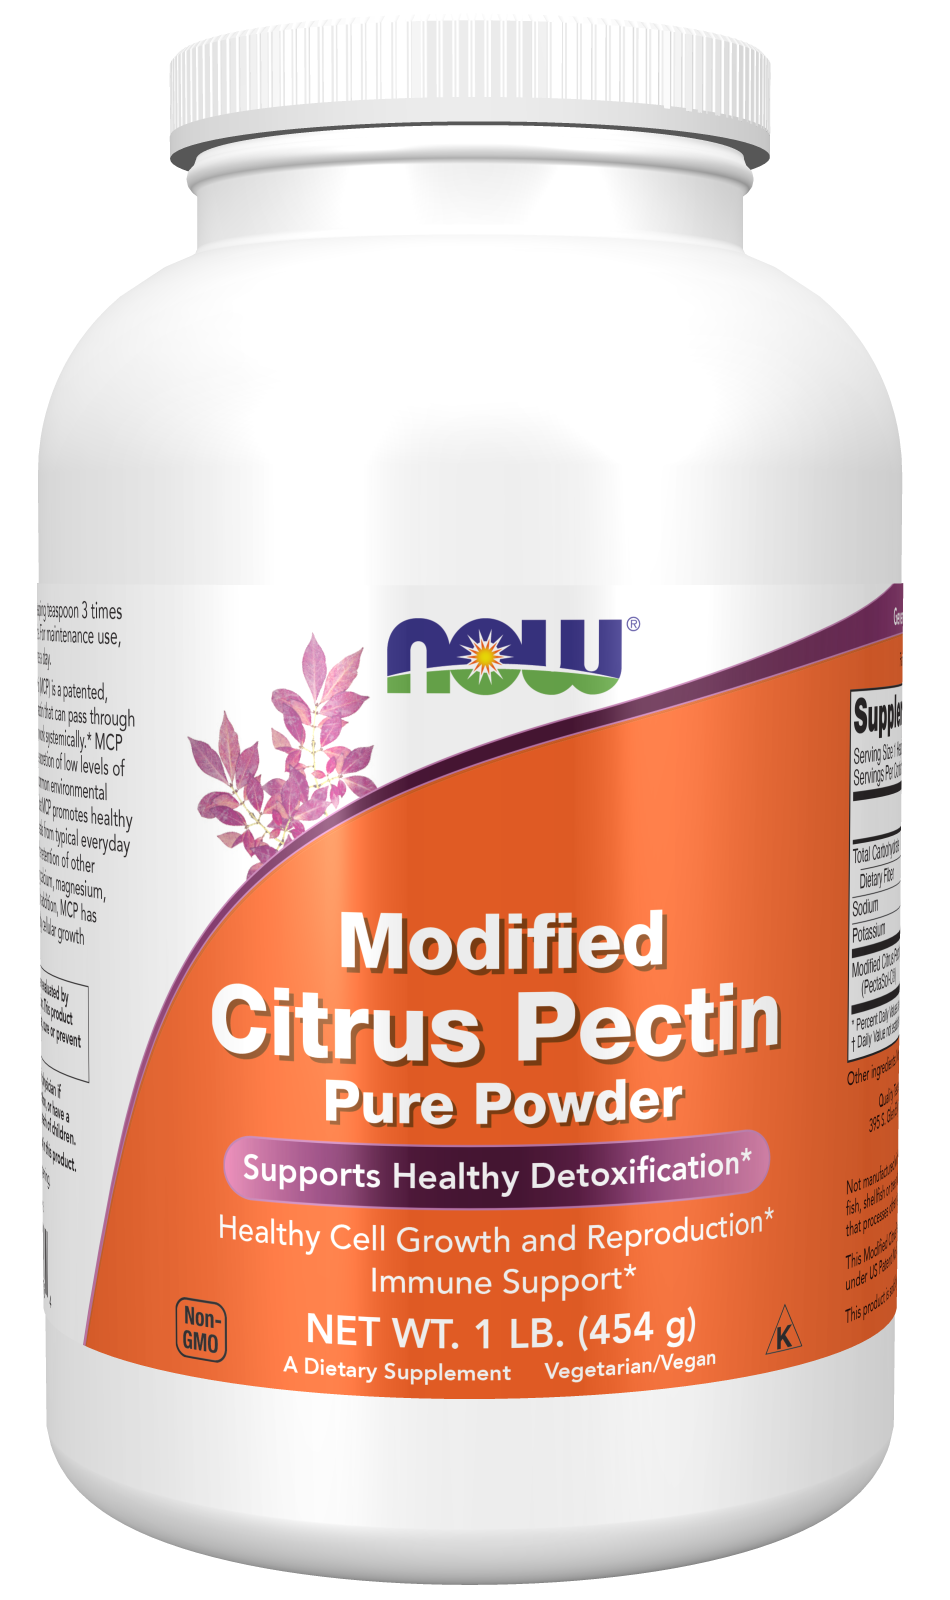 Modified Citrus Pectin Pure Powder - 1 lb. Bottle Front